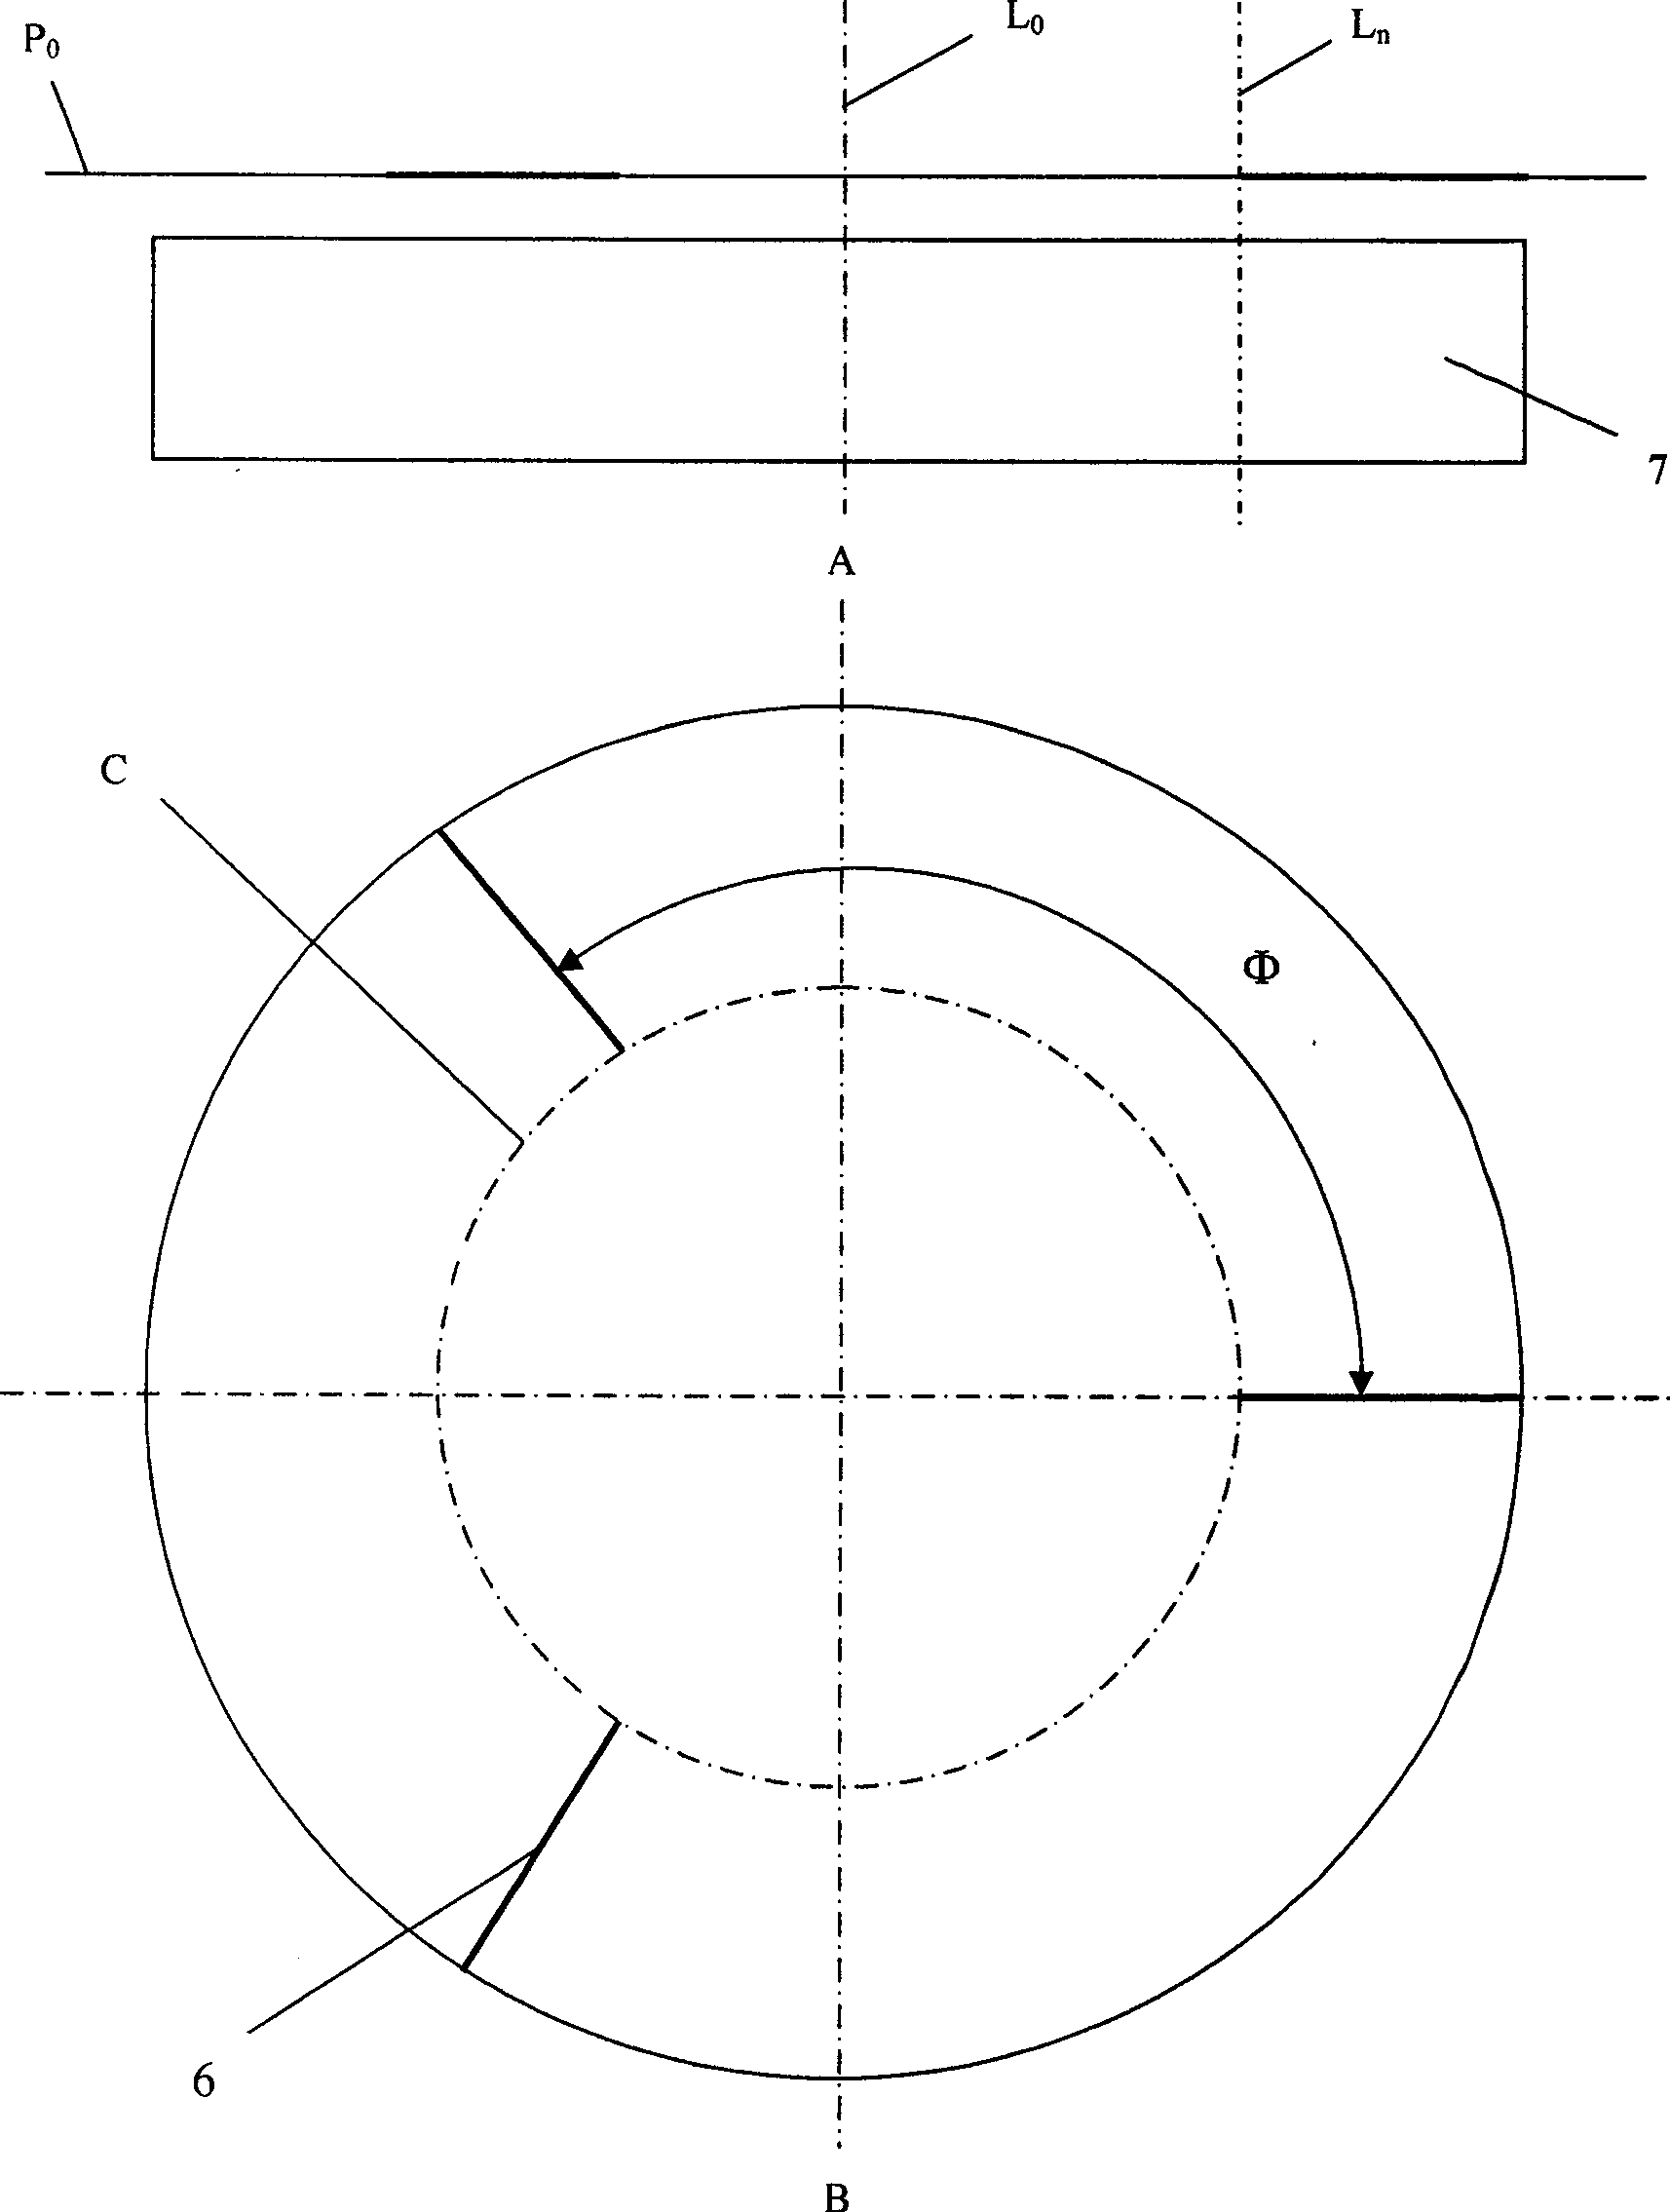 Multi-electrode spiral feeding integral blade wheel inter-blade passage electrolytic machining method